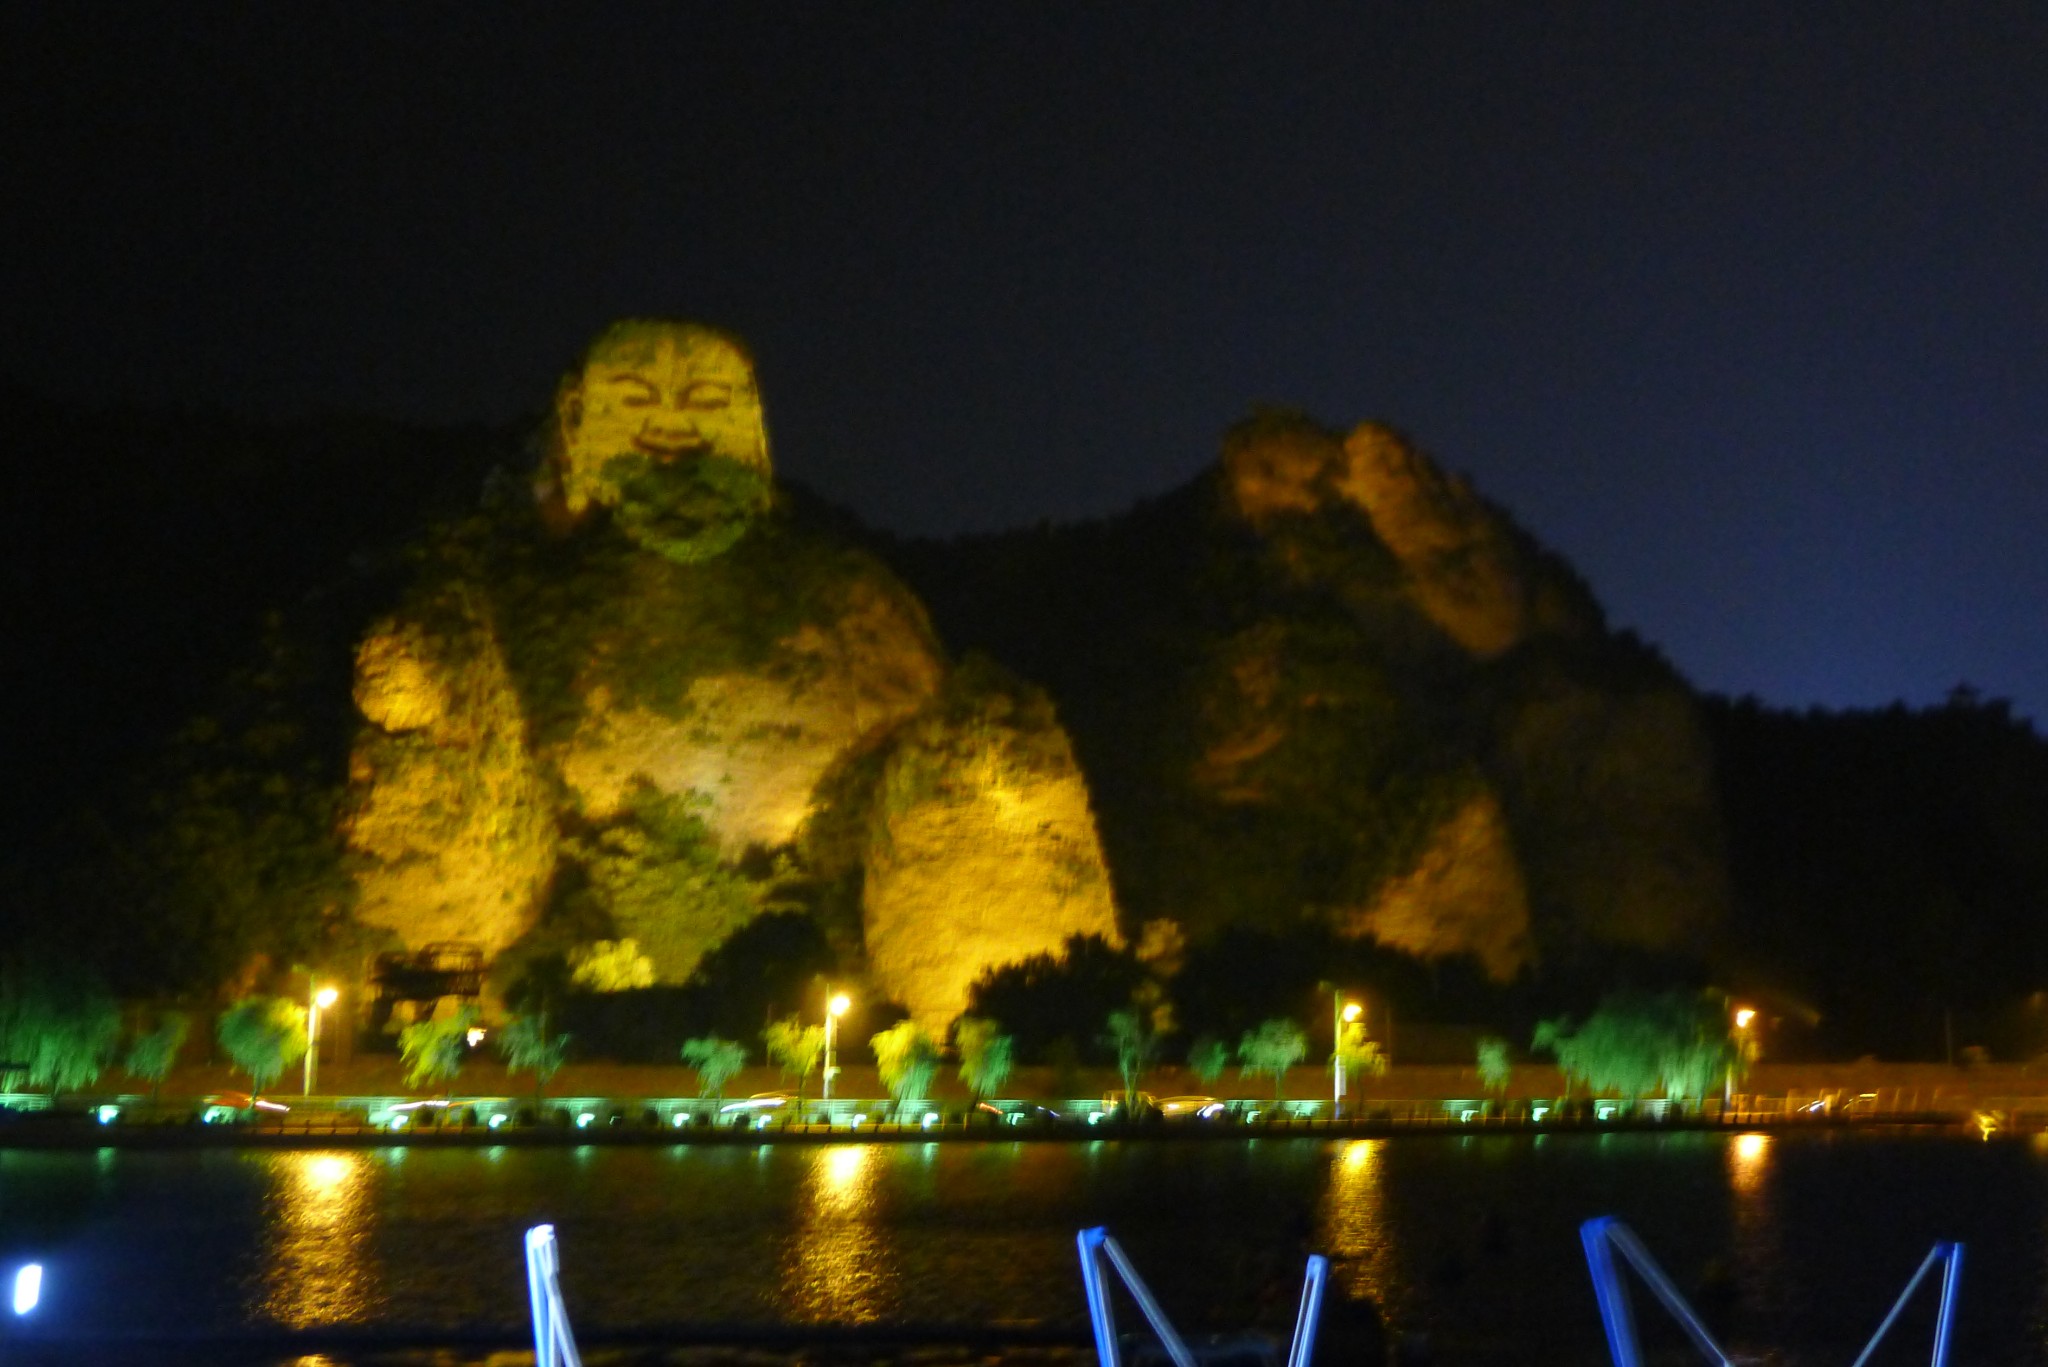 晚上在武烈河畔,可以看到由灯光照射形成的罗汉山.